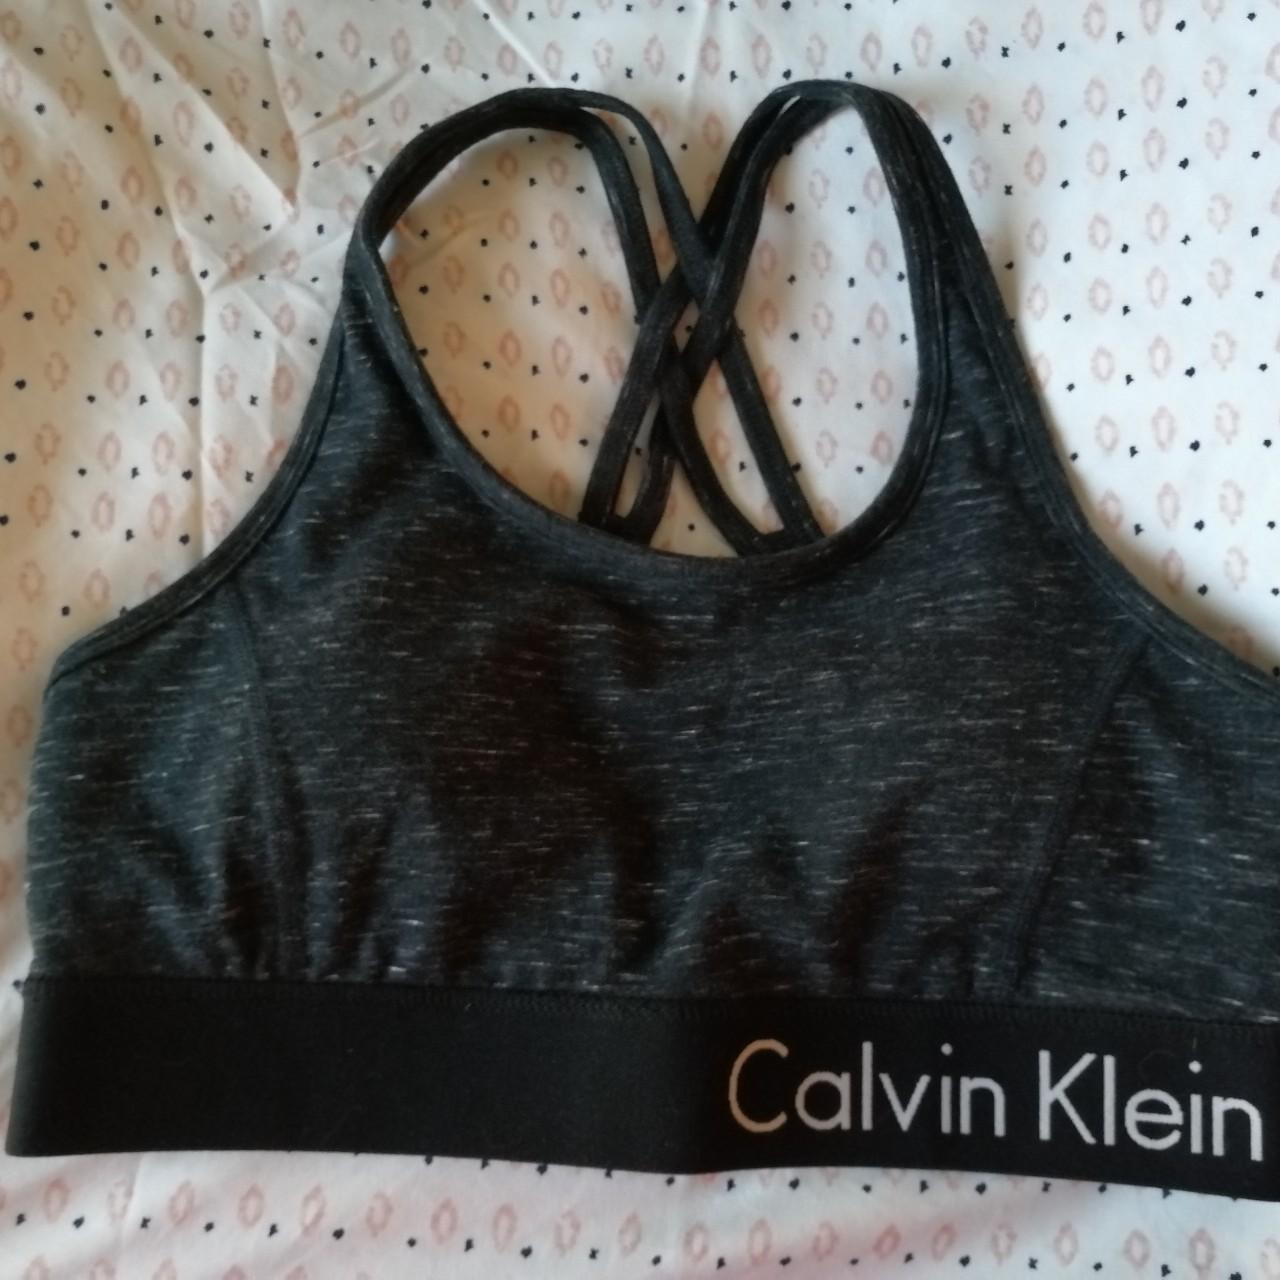 Calvin Klein sports bra no size tag, best fits - Depop